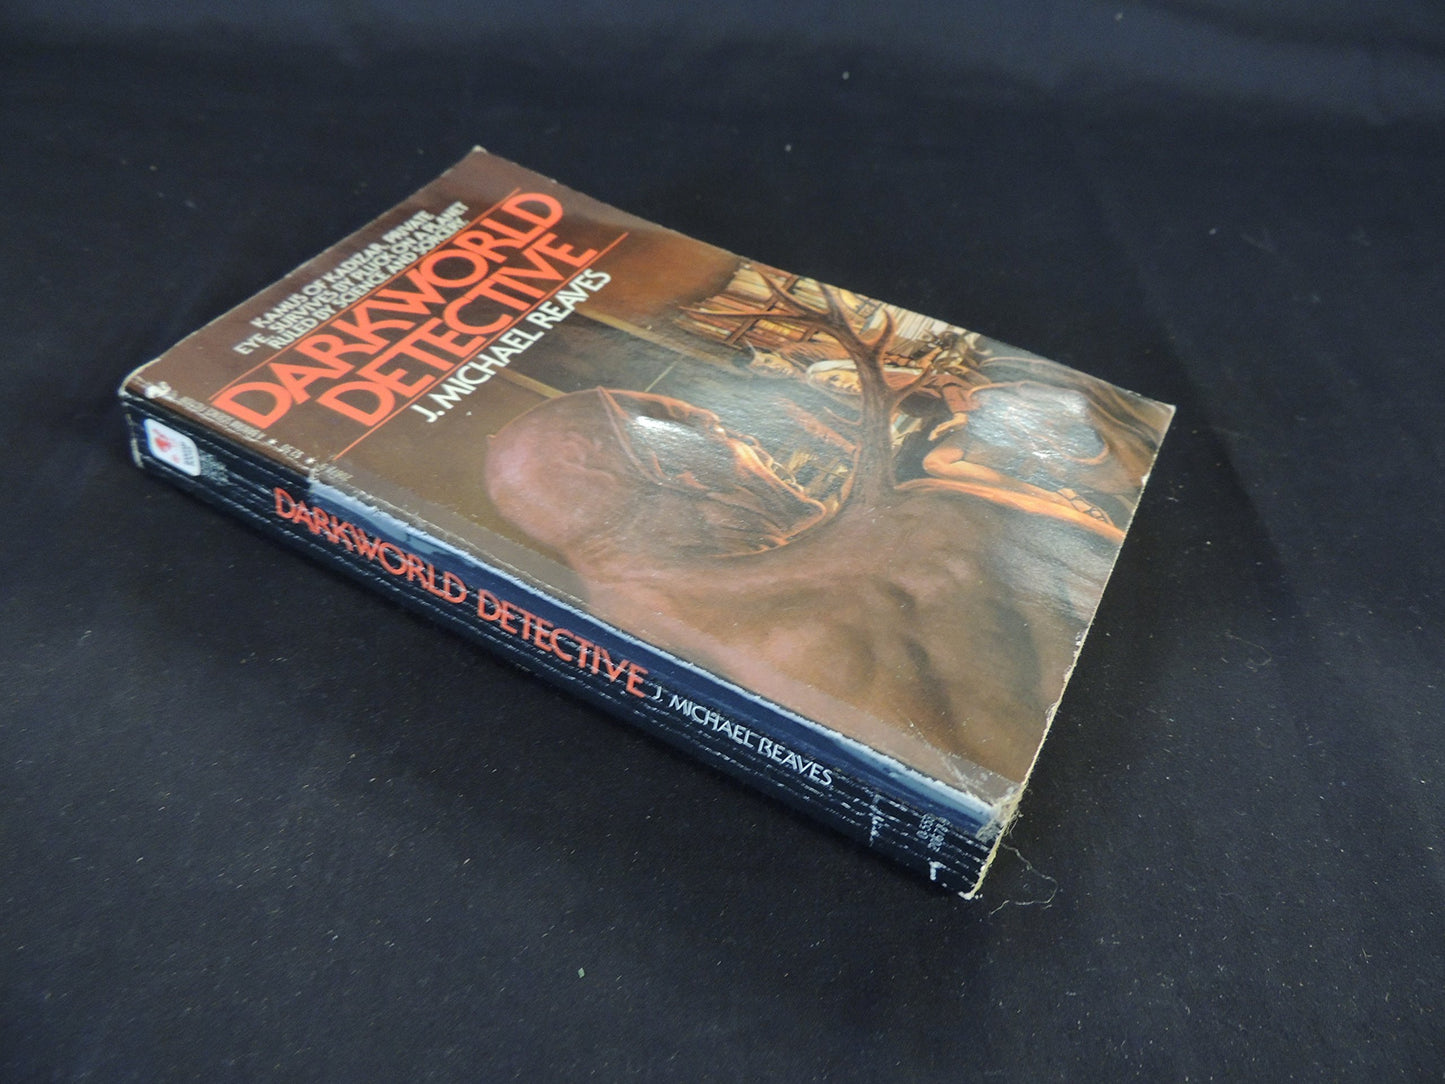 Vintage 1982 Mass Market Paperback Darkworld Detective J. Michael Reaves Bantam Books First Edition